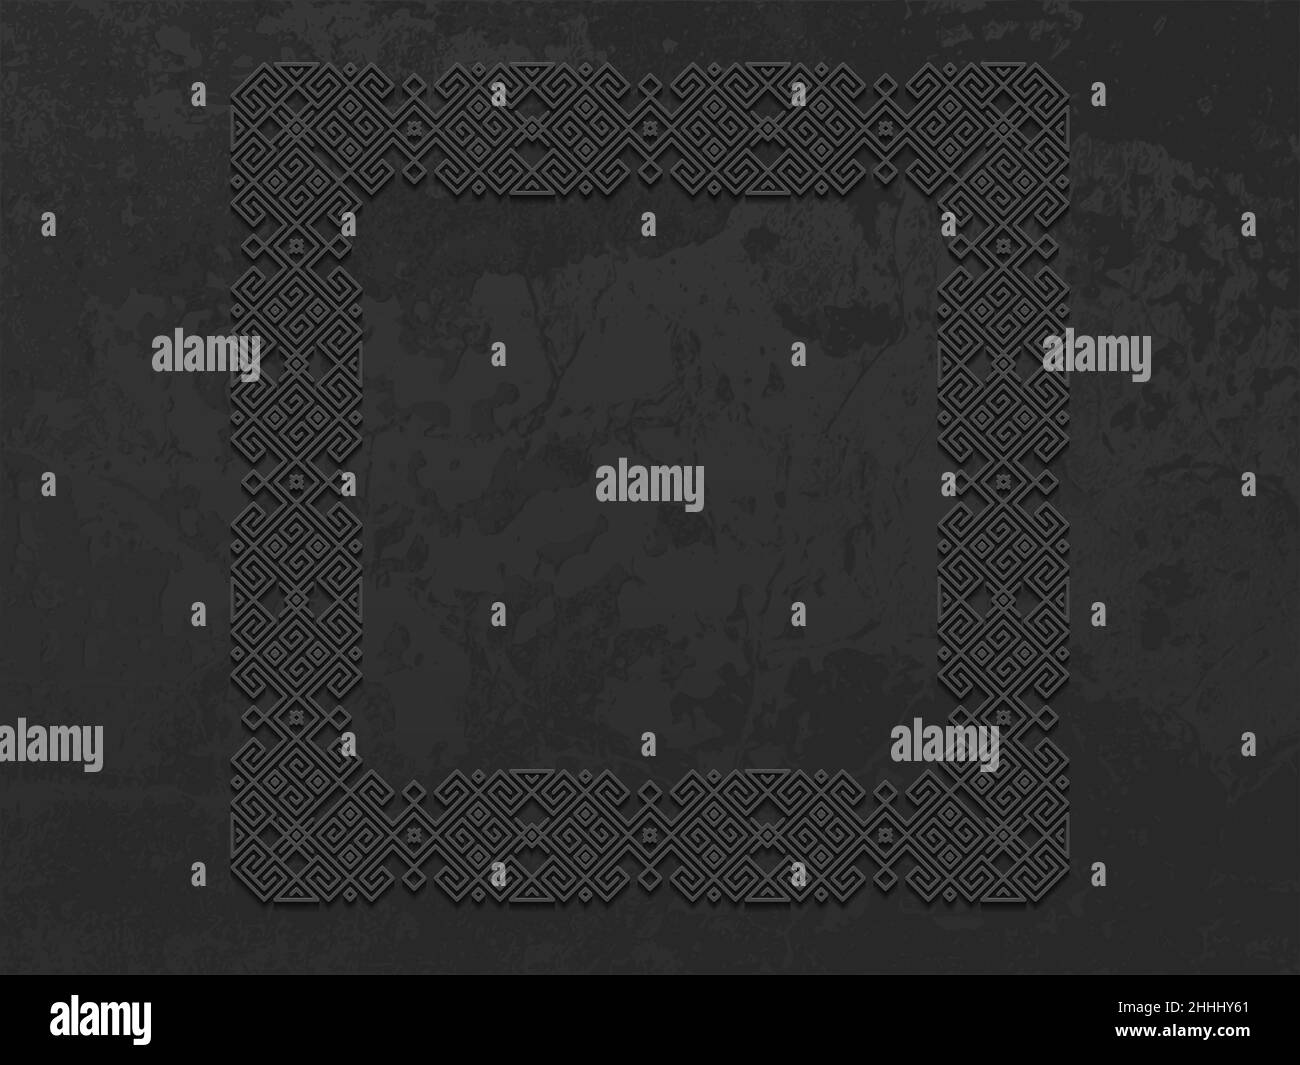 Vektor grunge Grobe dunkle Metall Hintergrund mit skandinavischem Muster. Bügeleisen Material brutale ethnische geometrische Muster im norwegischen Stil. Slawische heidnischen Stock Vektor